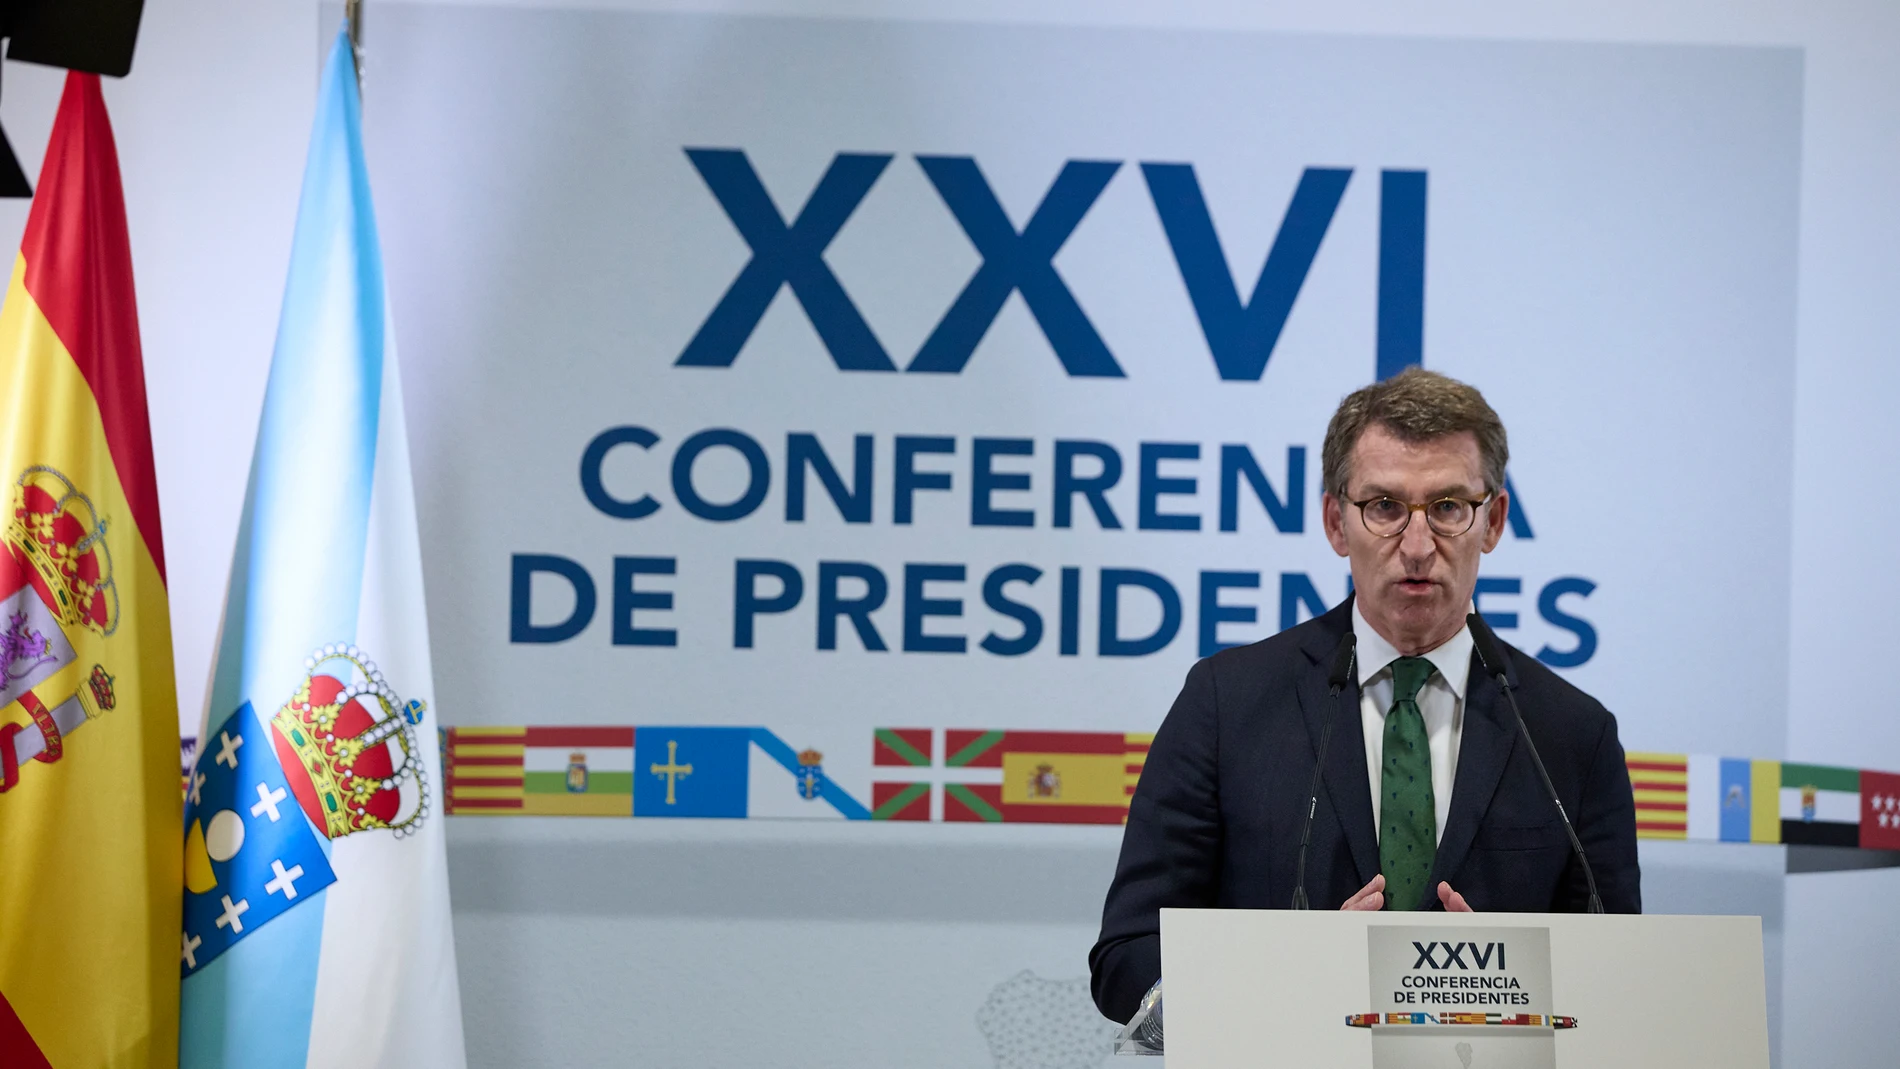 El presidente de la Xunta, Alberto Núñez Feijóo, comparece en la conferencia de Presidentes